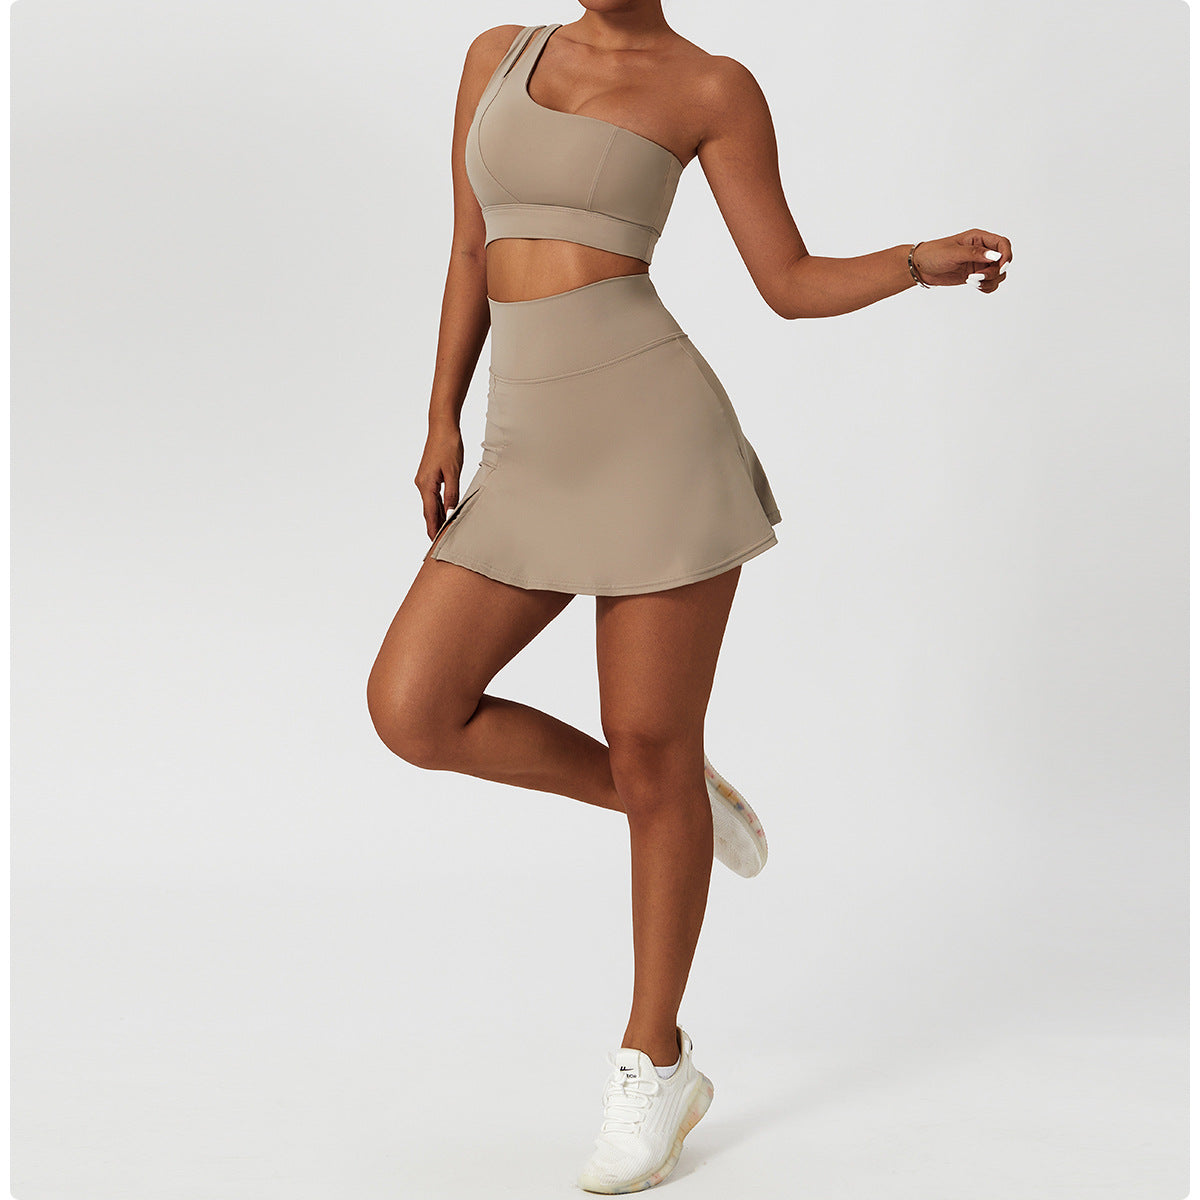 New Slim Yoga Skirt Breathable Mini Skirt Running Fitness Tennis Anti Slip Sports Skirt